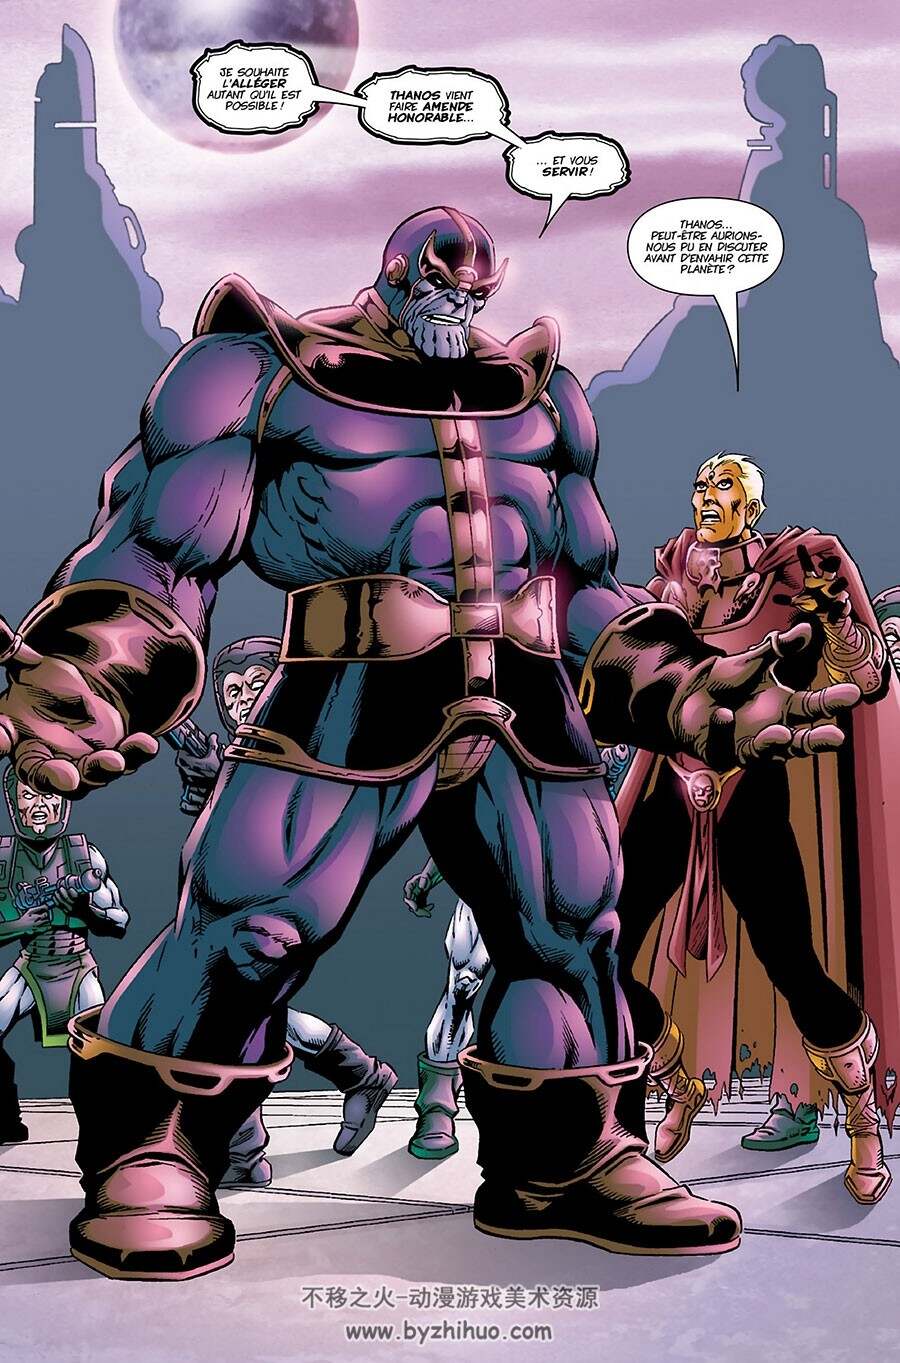 Thanos - Le Samaritain 全一册 Jim Starlin - Keith Giffen - Ron Lim 法语漫画下载